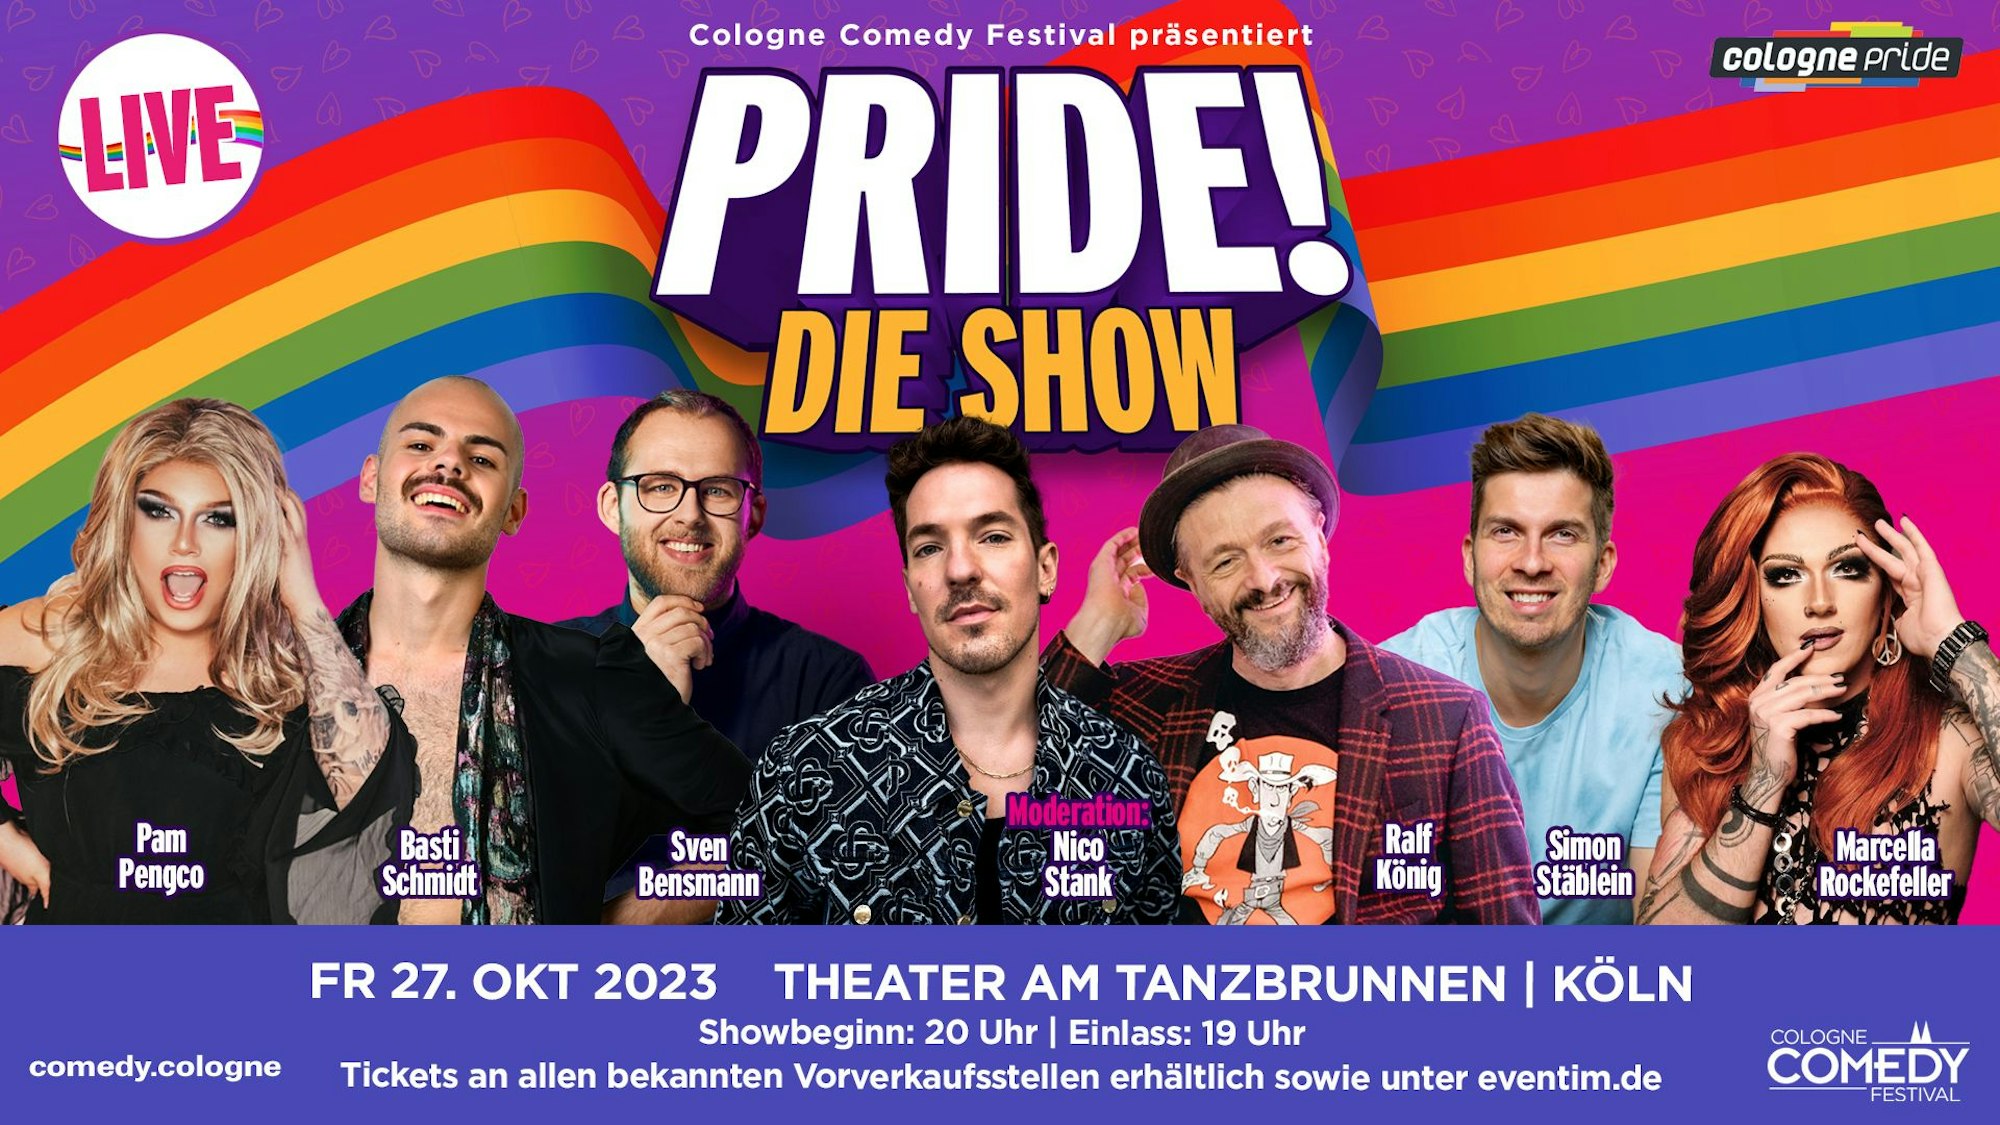 Der Flyer von der großen Gala „Pride! The Show“.